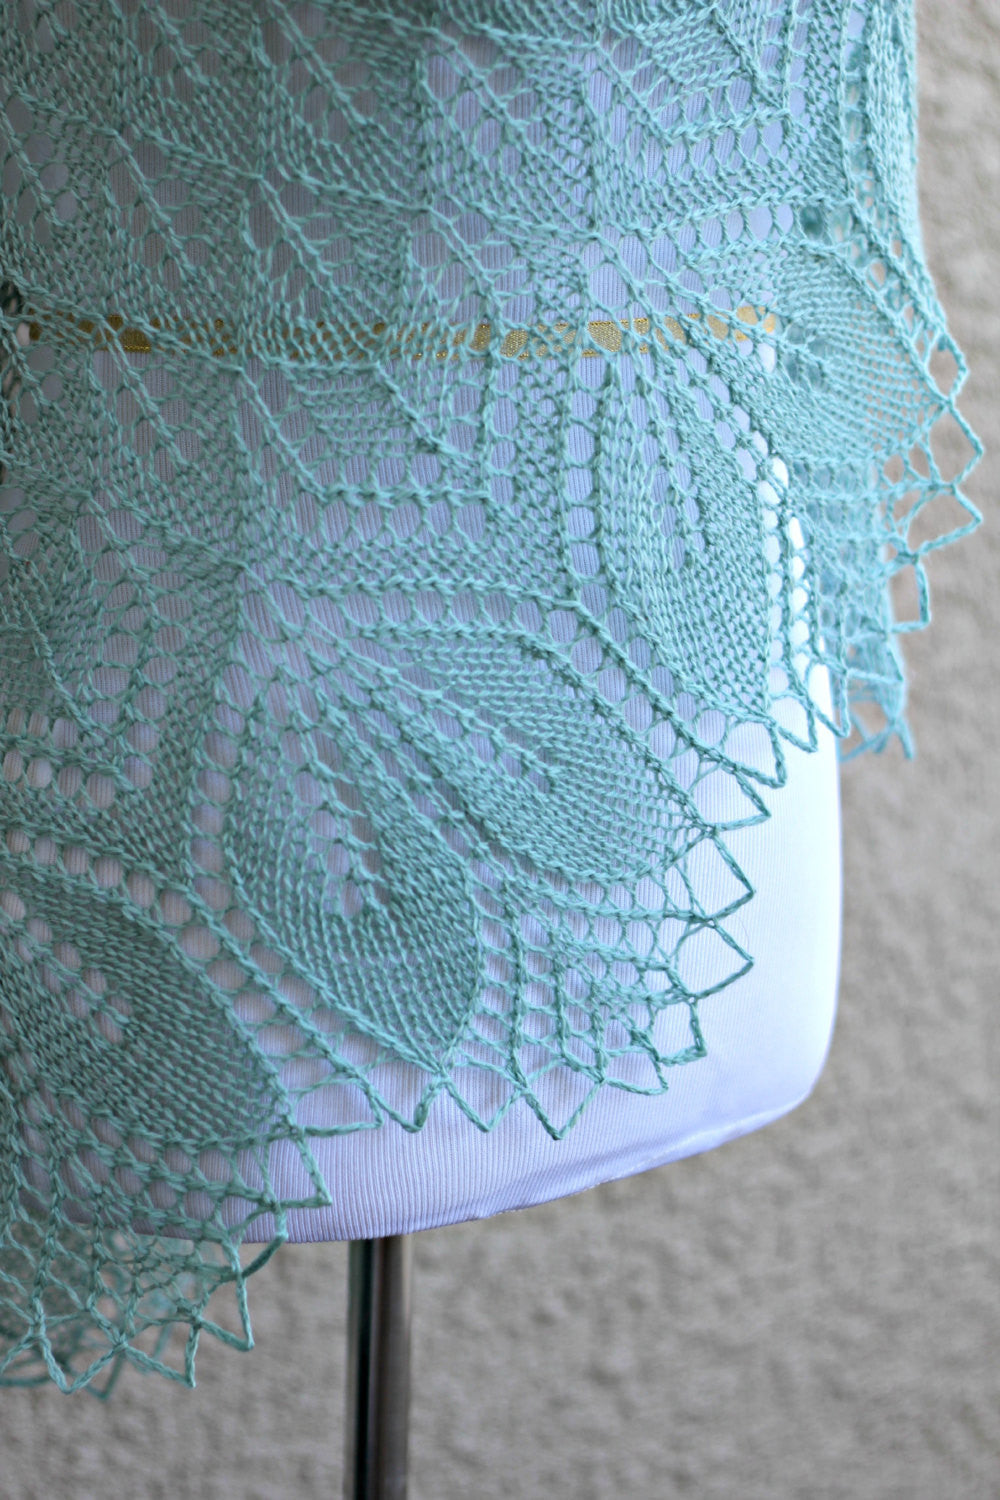 Olive lace shawl